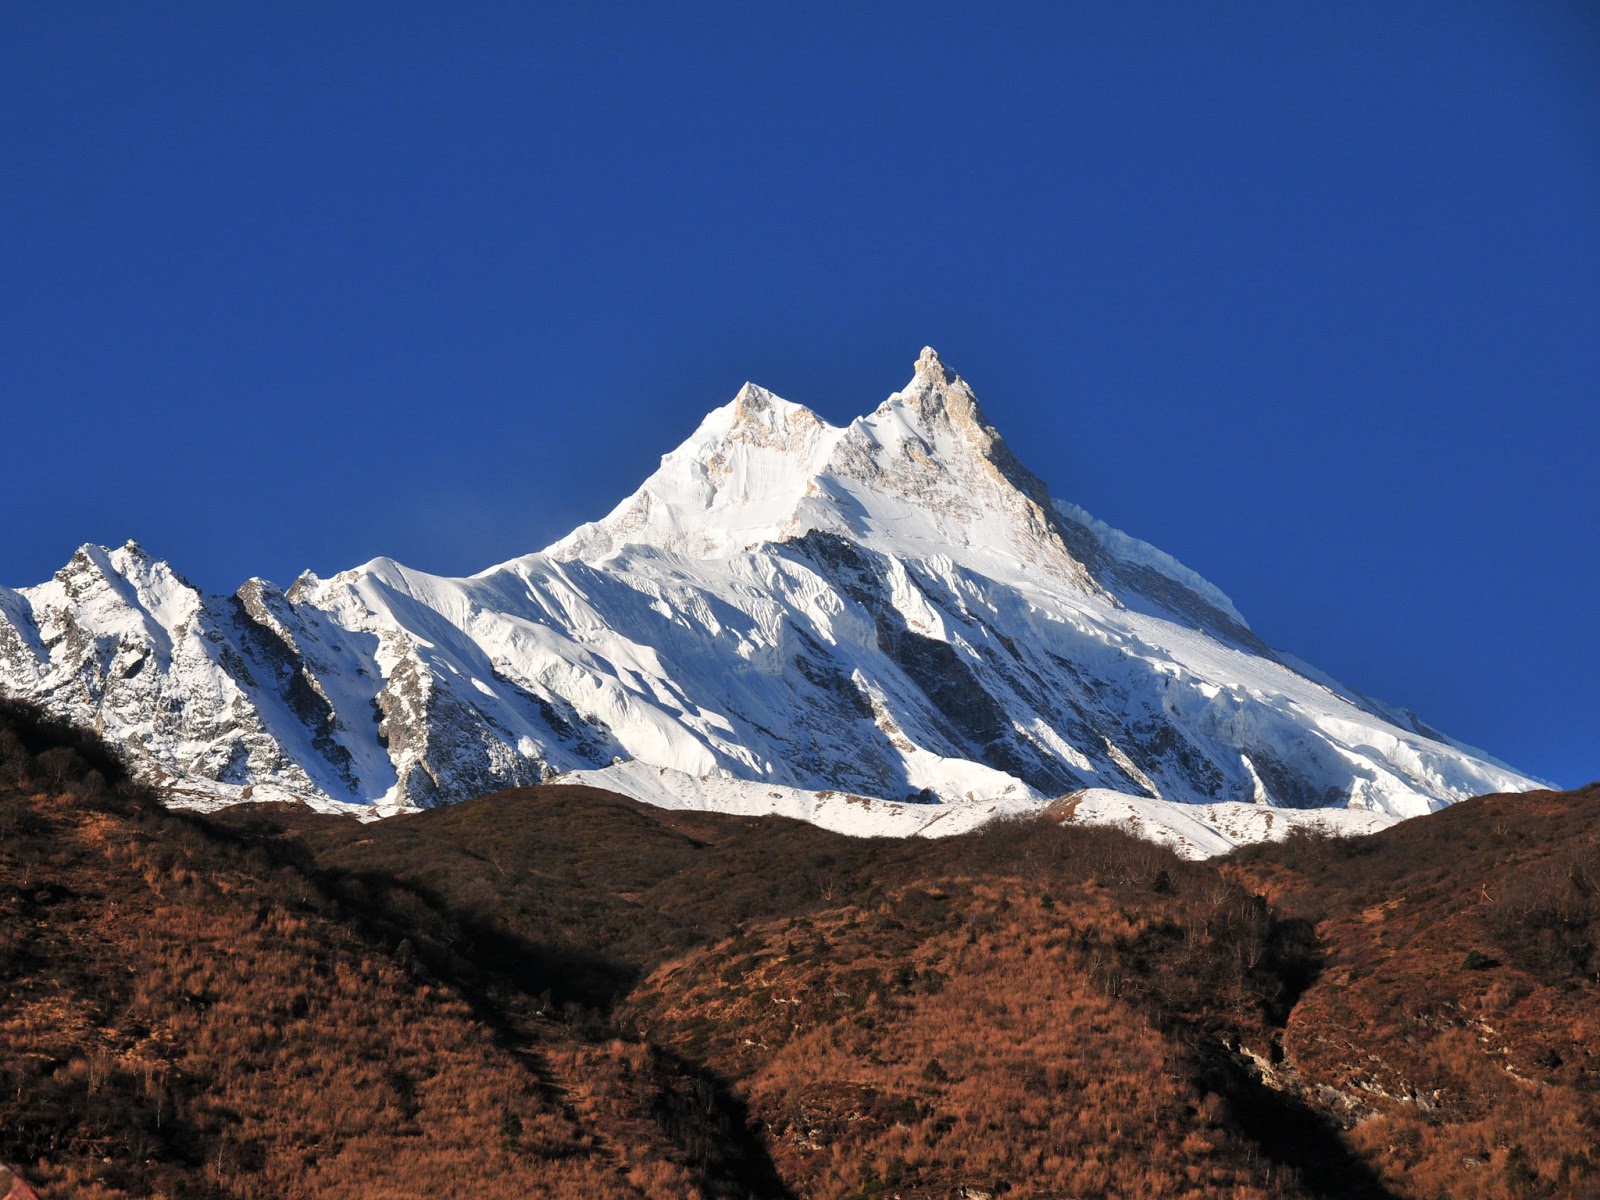 Gora. Манаслу вершина. Гора Манаслу Гималаи. Гималаи самая высокая вершина. Денали Белуха Чогори Эверест Канченджанга.